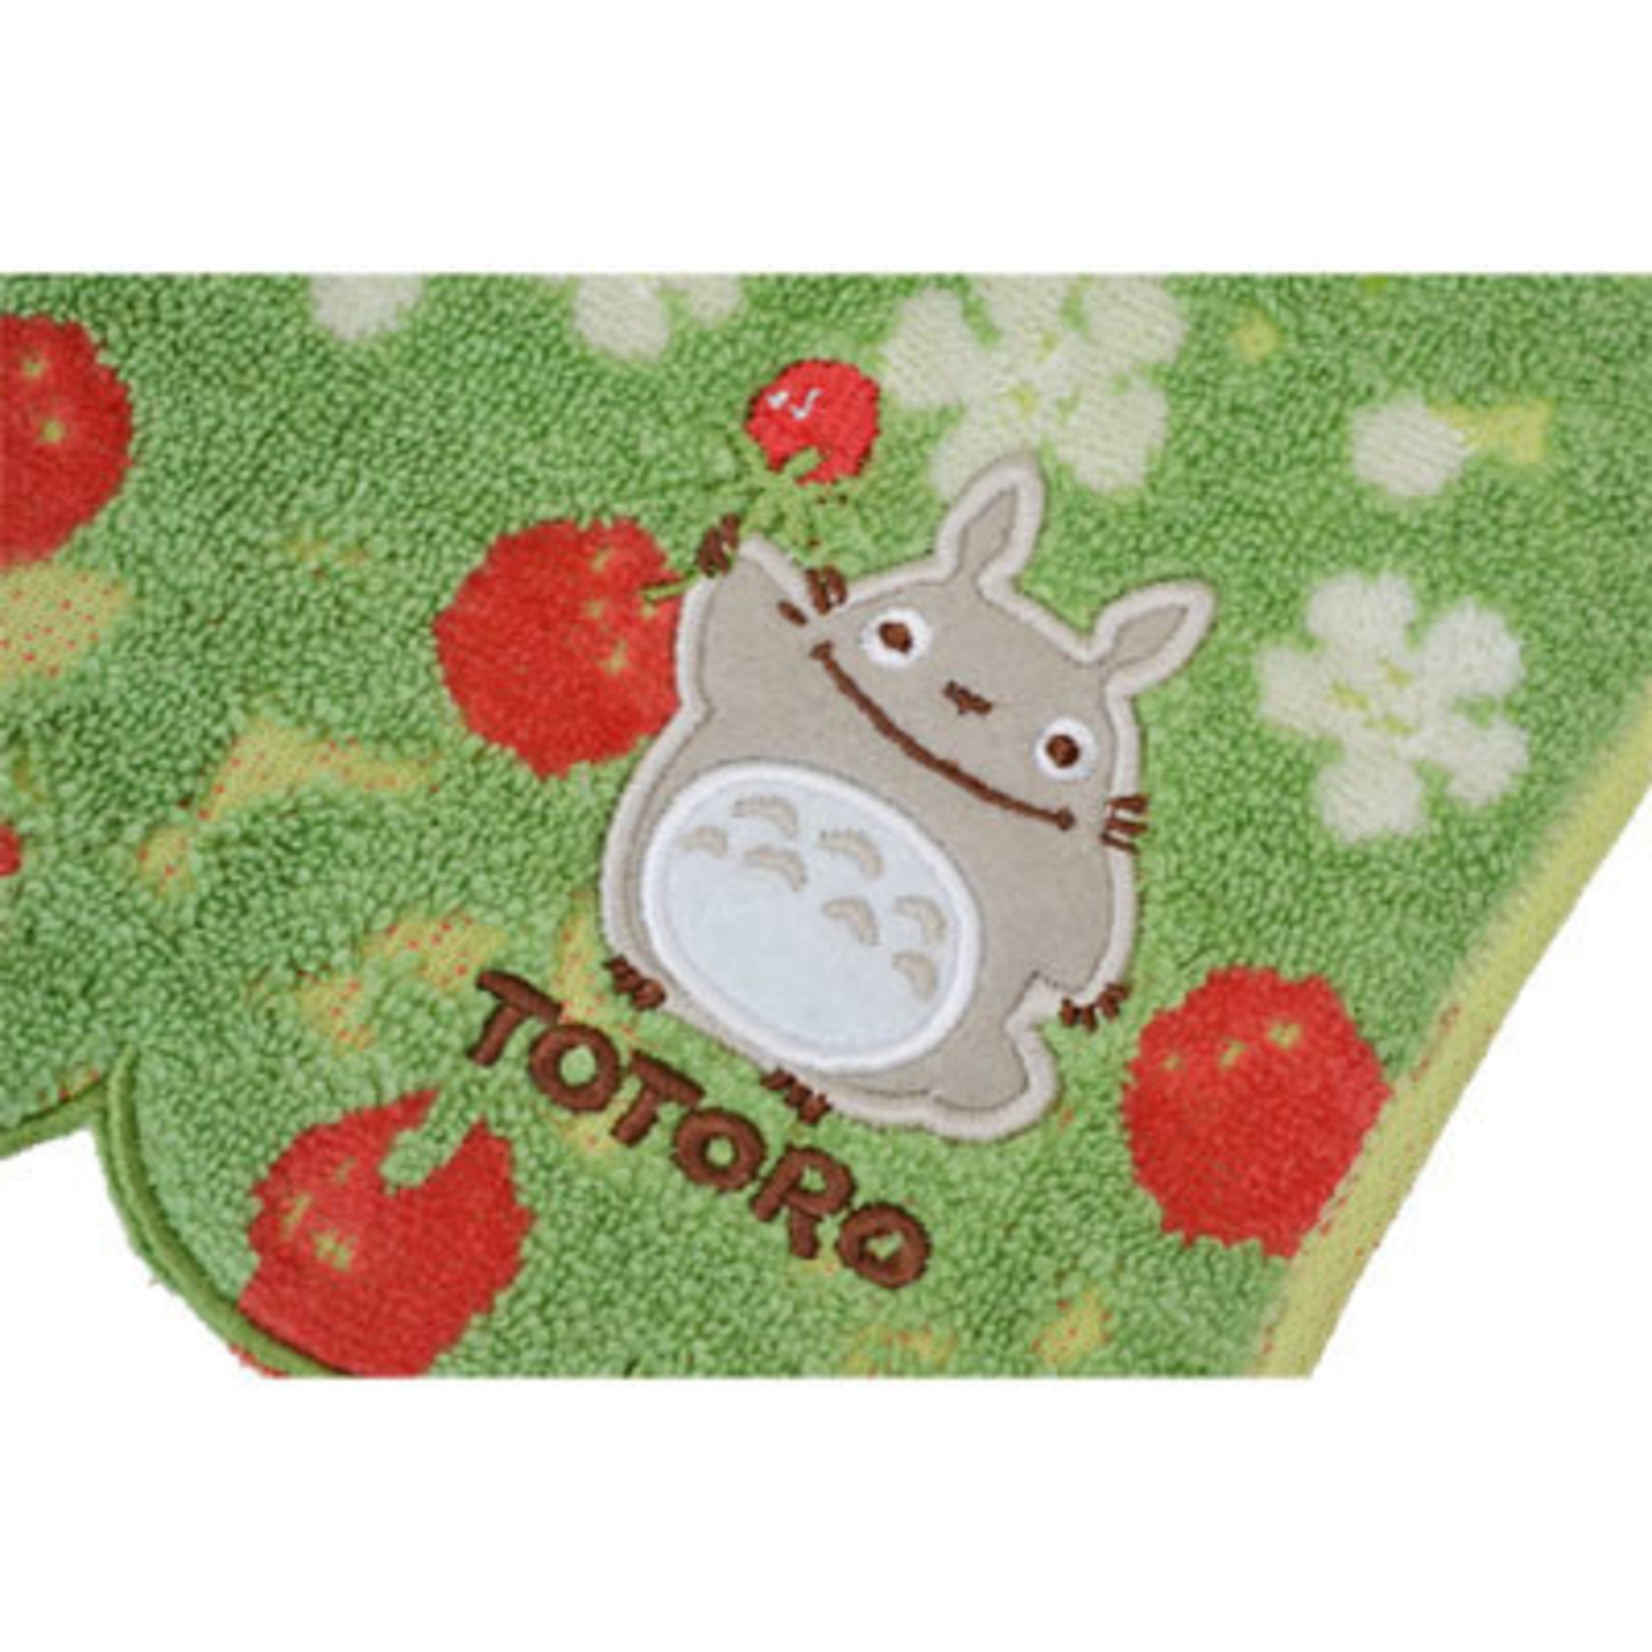 Totoro Washcloth "Satsuki Hare" - 1005054800